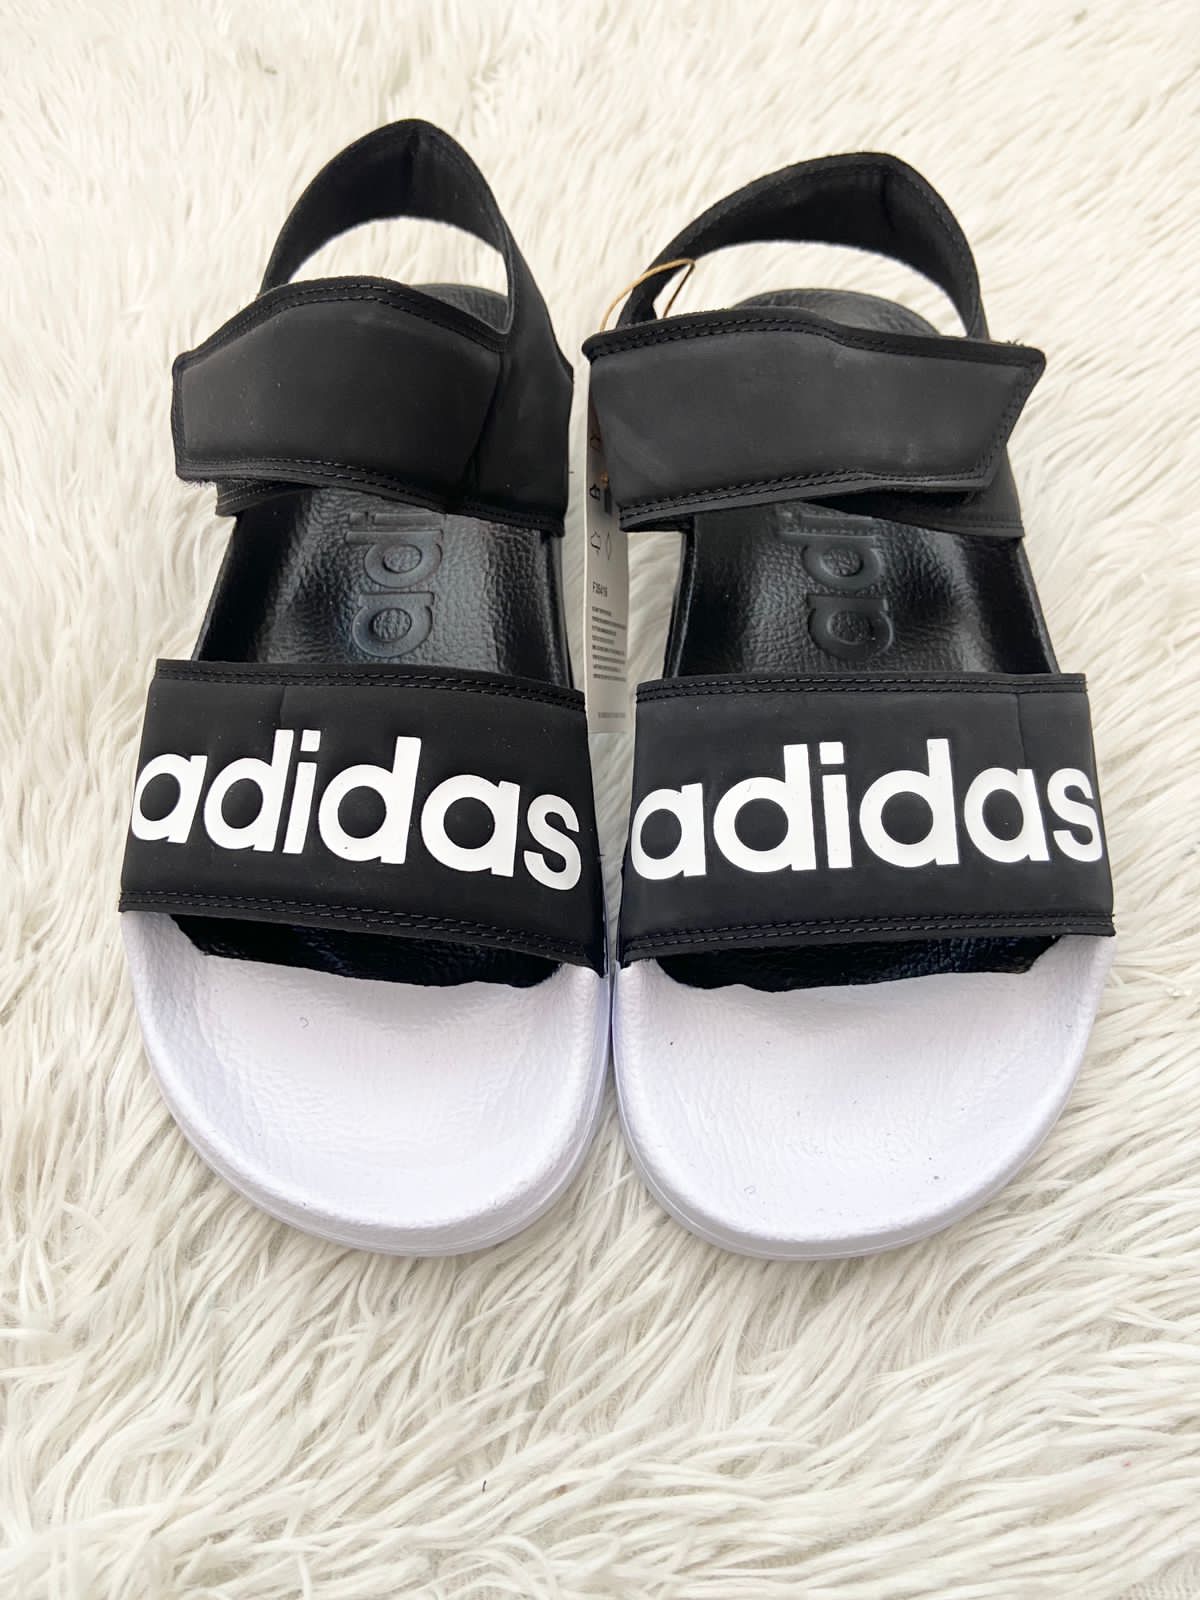 Sandalias ADIDAS ORIGINAL negra letras Adidas color blanco en el centro.